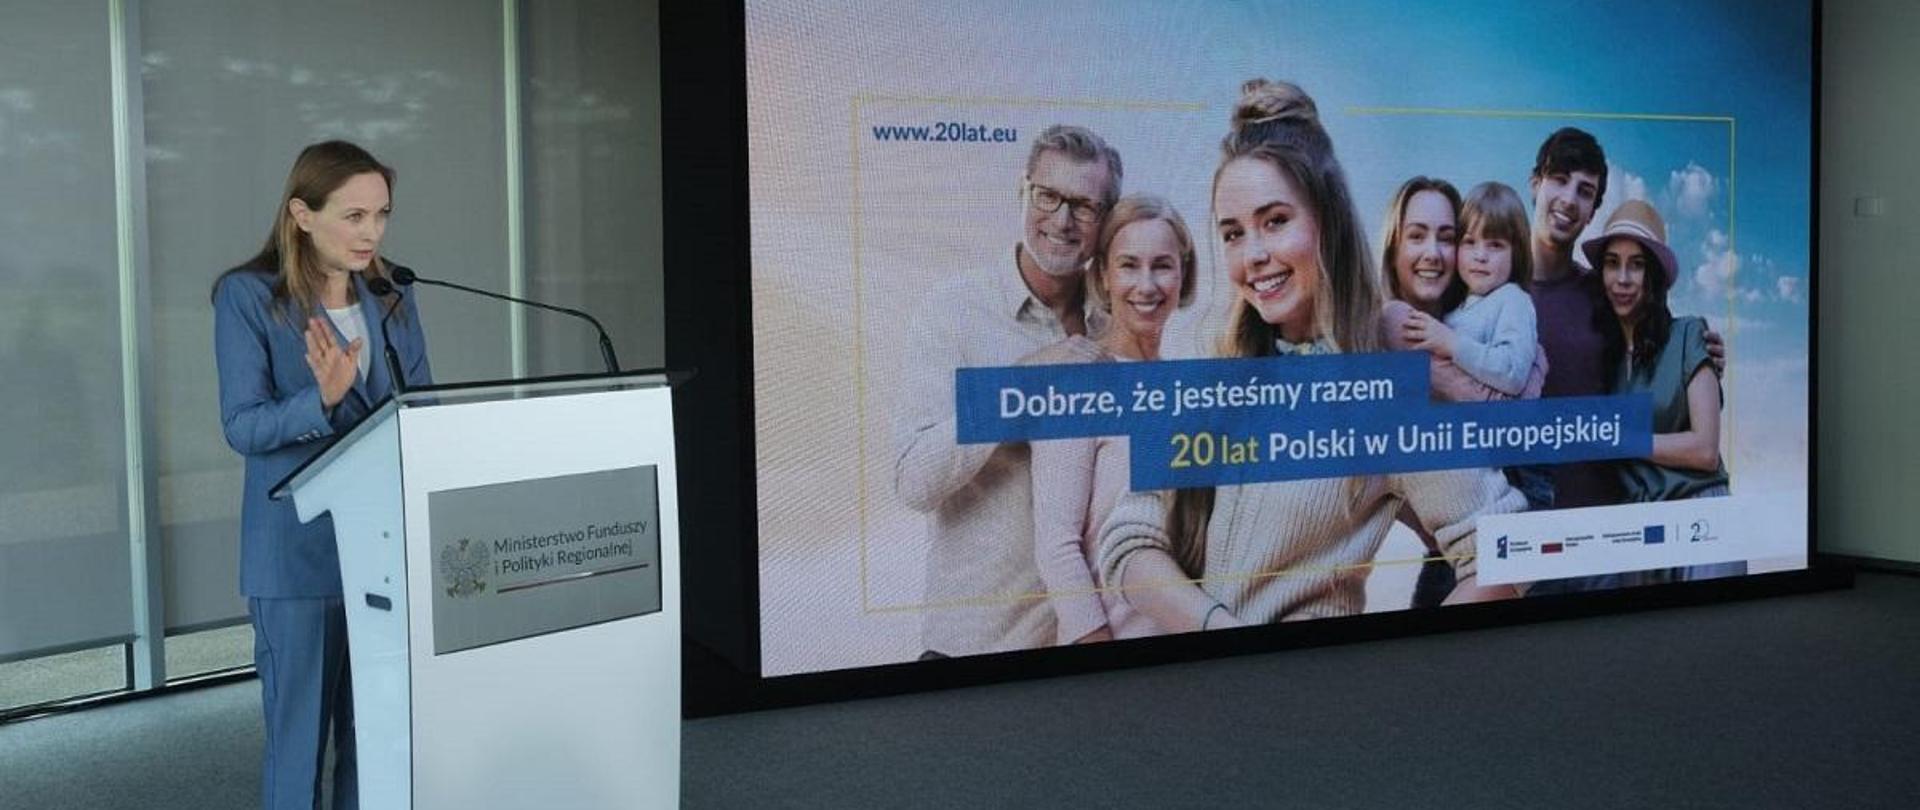 Minister funduszy i polityki regionalnej Katarzyna Pełczyńska-Nałęcz stoi przy mównicy, po jej lewej stronie na ekranie wyświetlone jest zdjęcie przedstawiające mężczyzn i kobiety, z dzieckiem i napisem "Dobrze, że jesteśmy razem. 20 lat Polski w Unii Europejskiej"